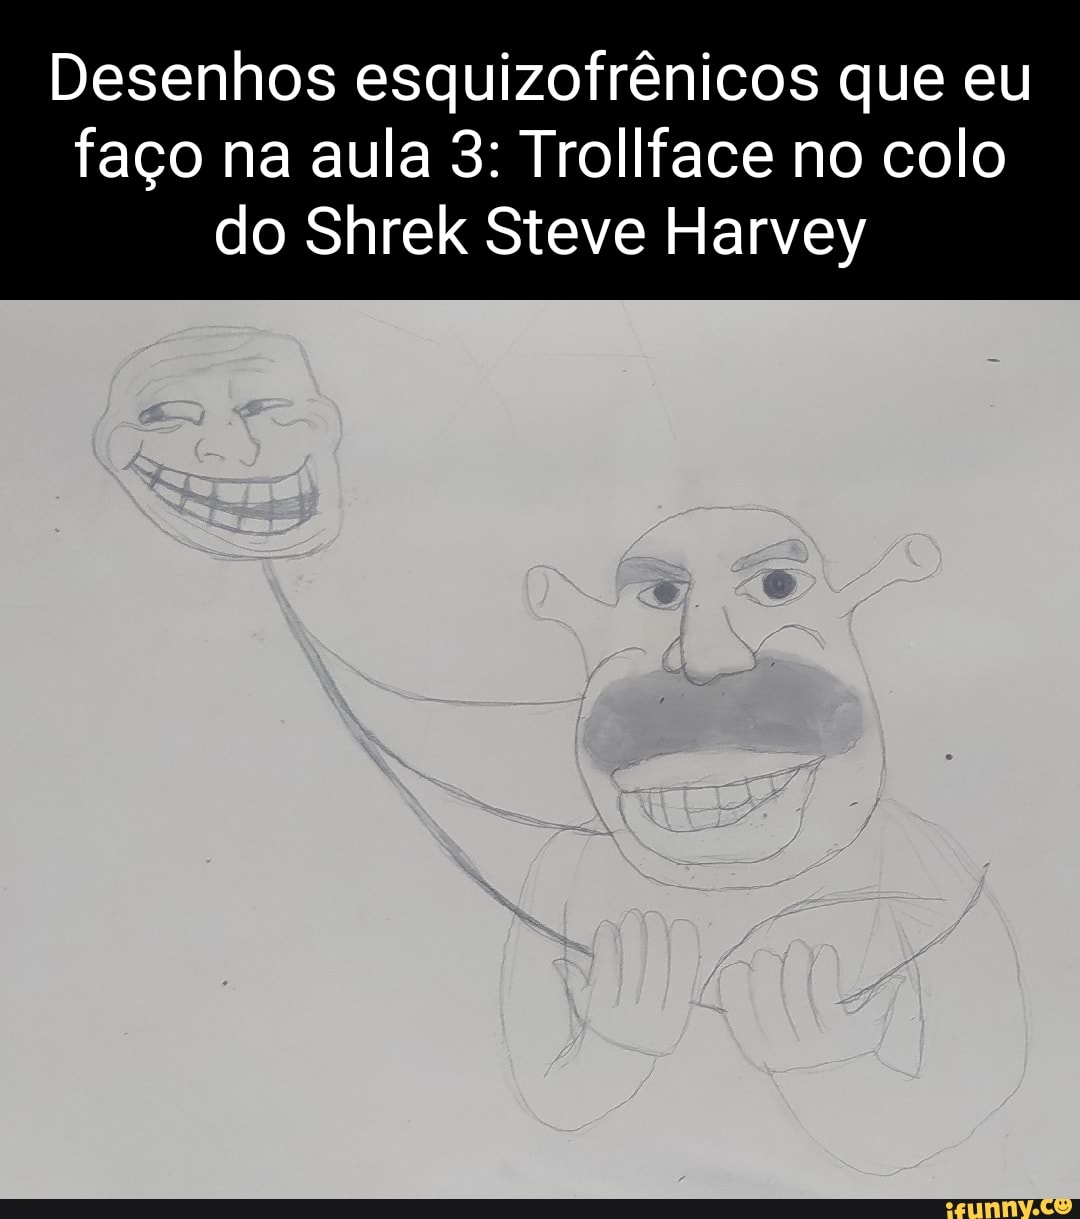 stEvE hARvEy sHREk  Shrek, Funny pix, Wallpaper